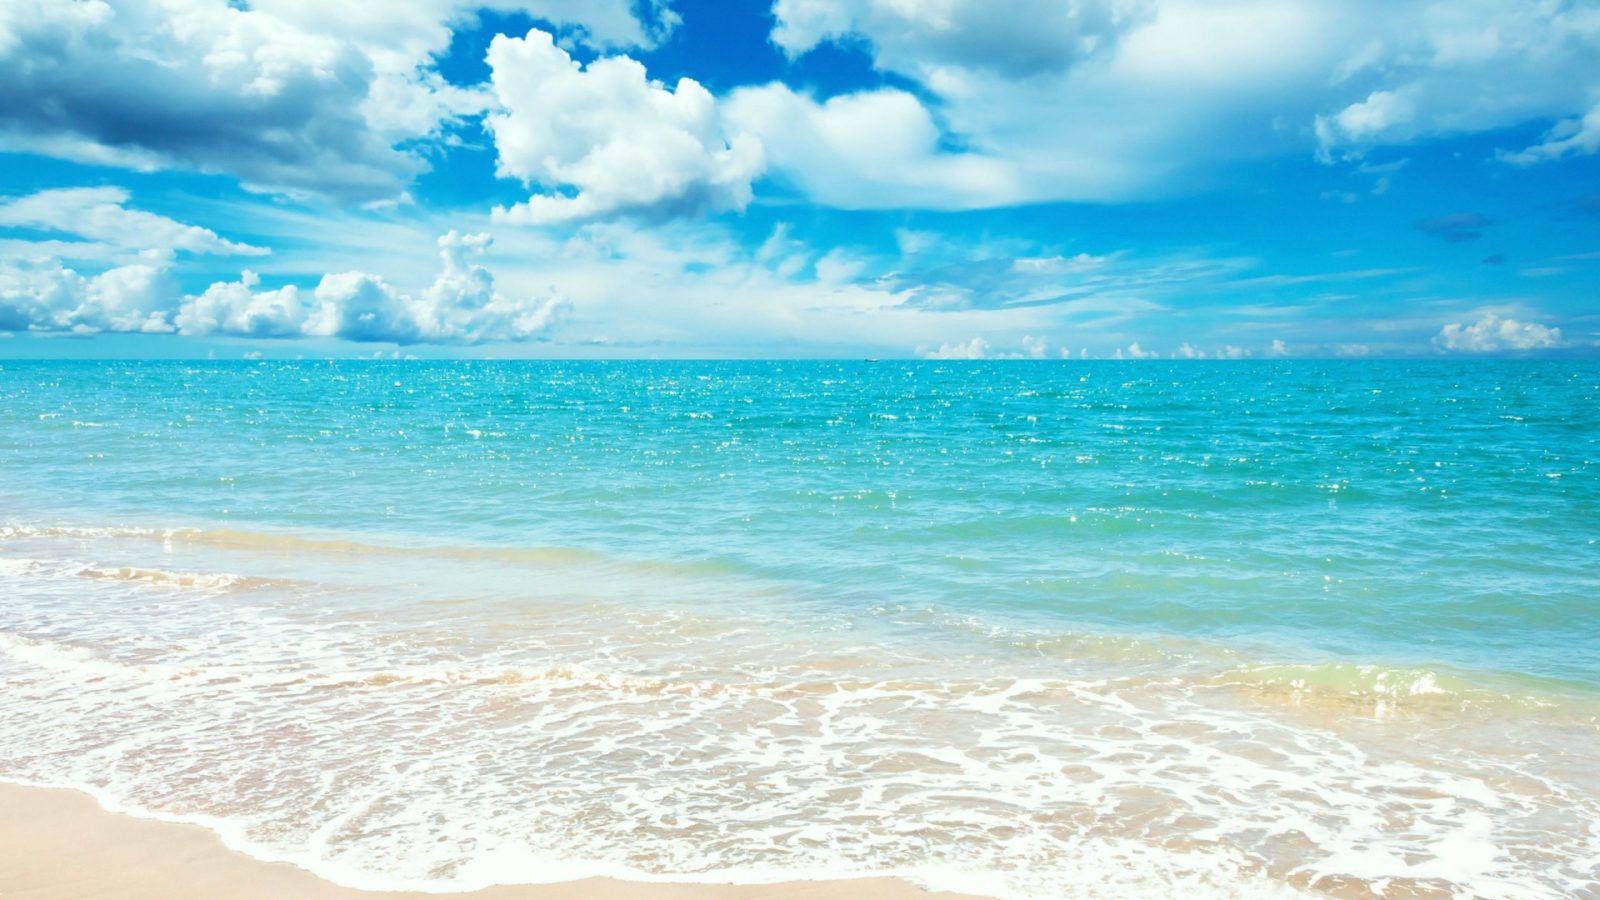 Hình nền bãi biển sẽ đưa bạn tới một không gian thư giãn, tĩnh lặng với hình ảnh đẹp như tranh vẽ của những bãi biển tuyệt đẹp. Hãy tìm ngay những hình nền này để tạo nên không gian làm việc hoàn hảo cho mình!